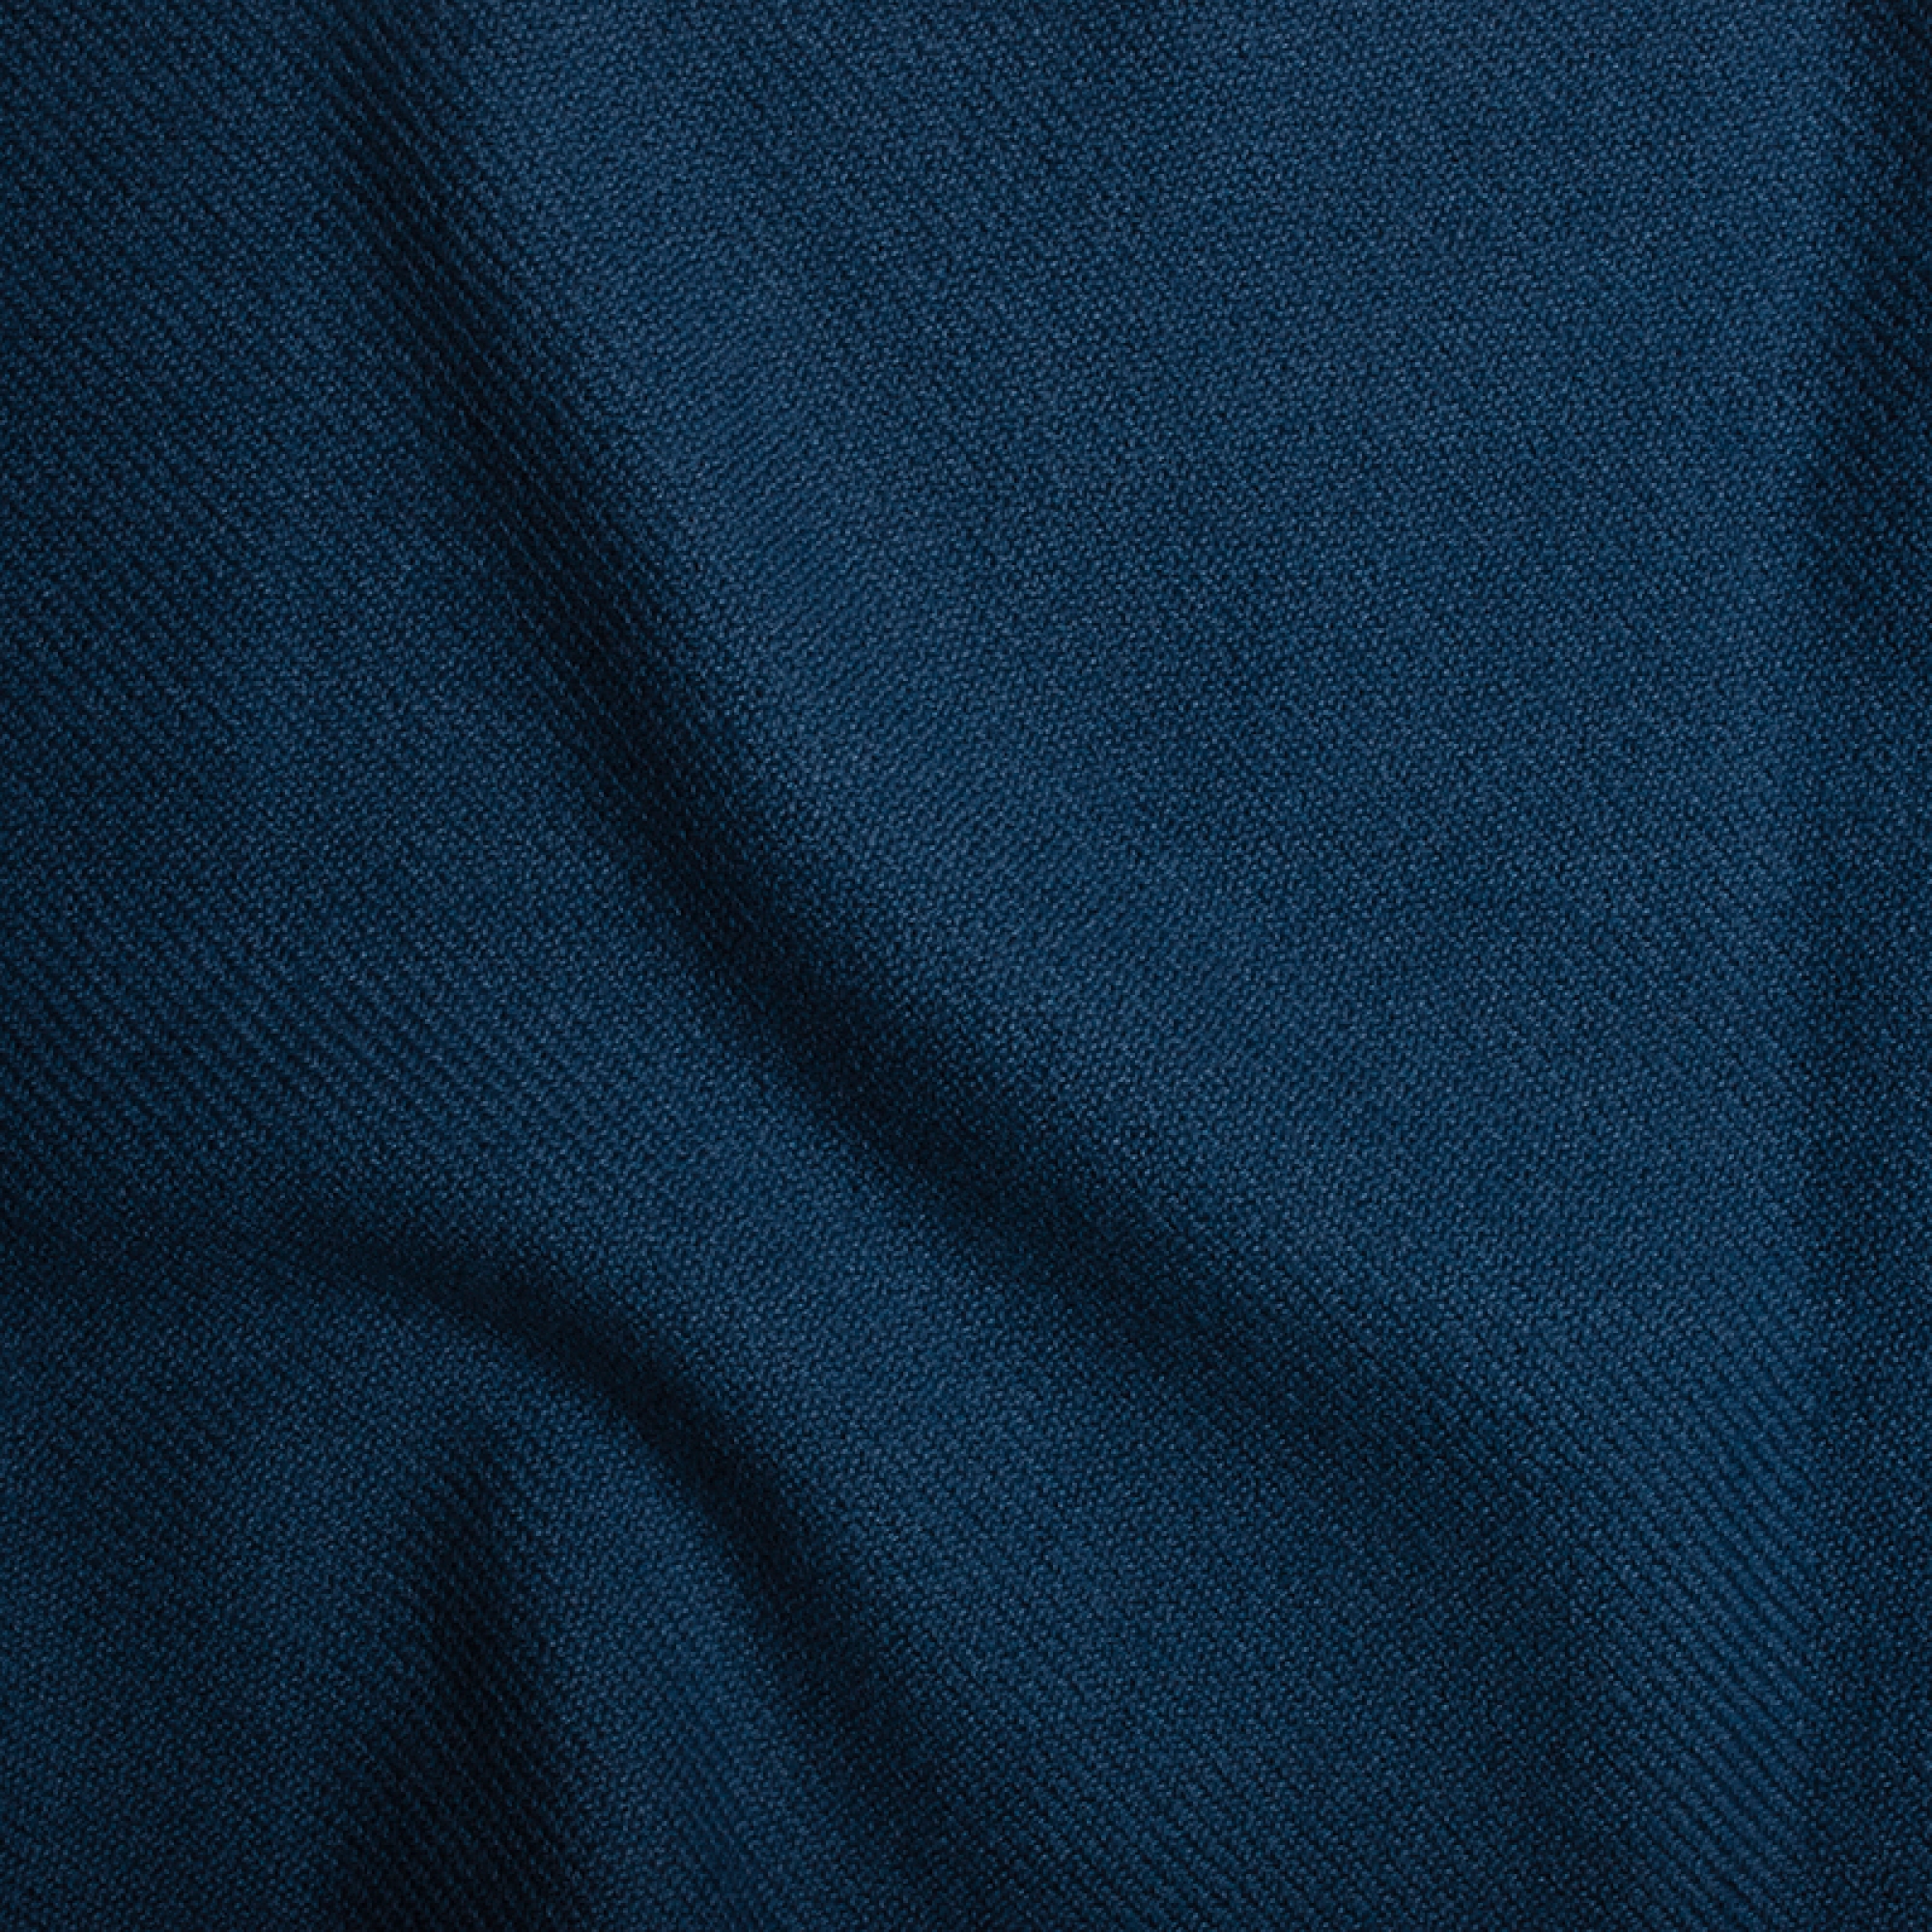 Cachemire accessoires couvertures plaids toodoo plain m 180 x 220 bleu prusse 180 x 220 cm